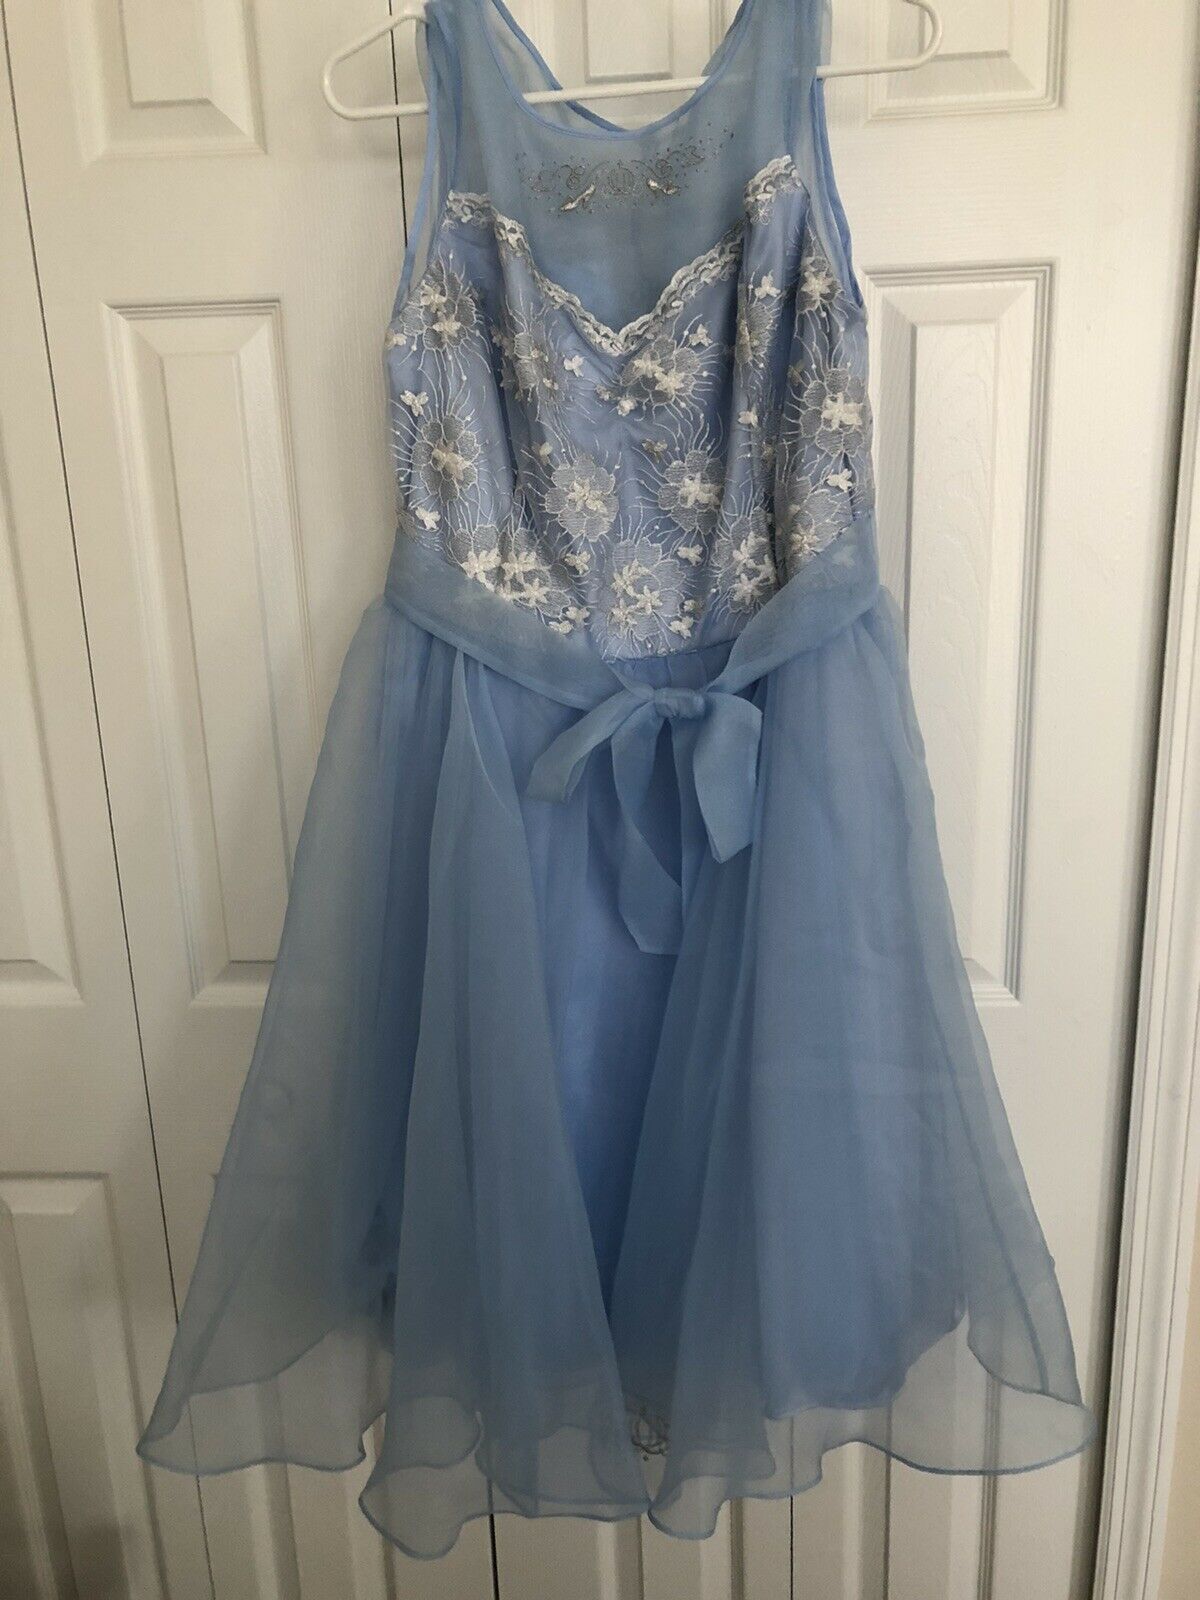 Rare Nwt Disney Parks Dress Shop Adult Large Cinderella Blue Lace